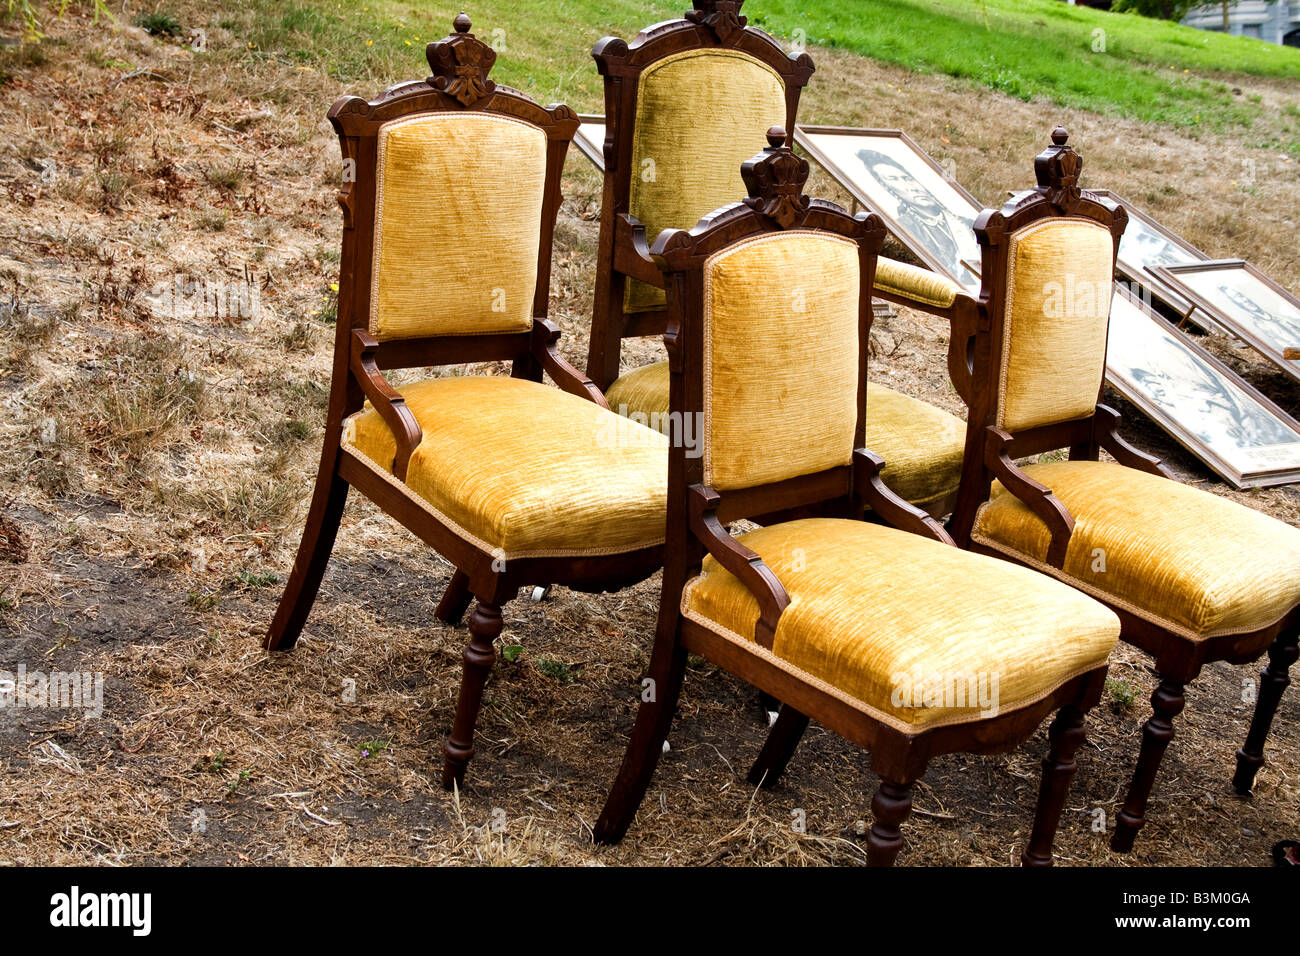 Quatre chaises jaune sur le flanc d'une colline de terre Banque D'Images